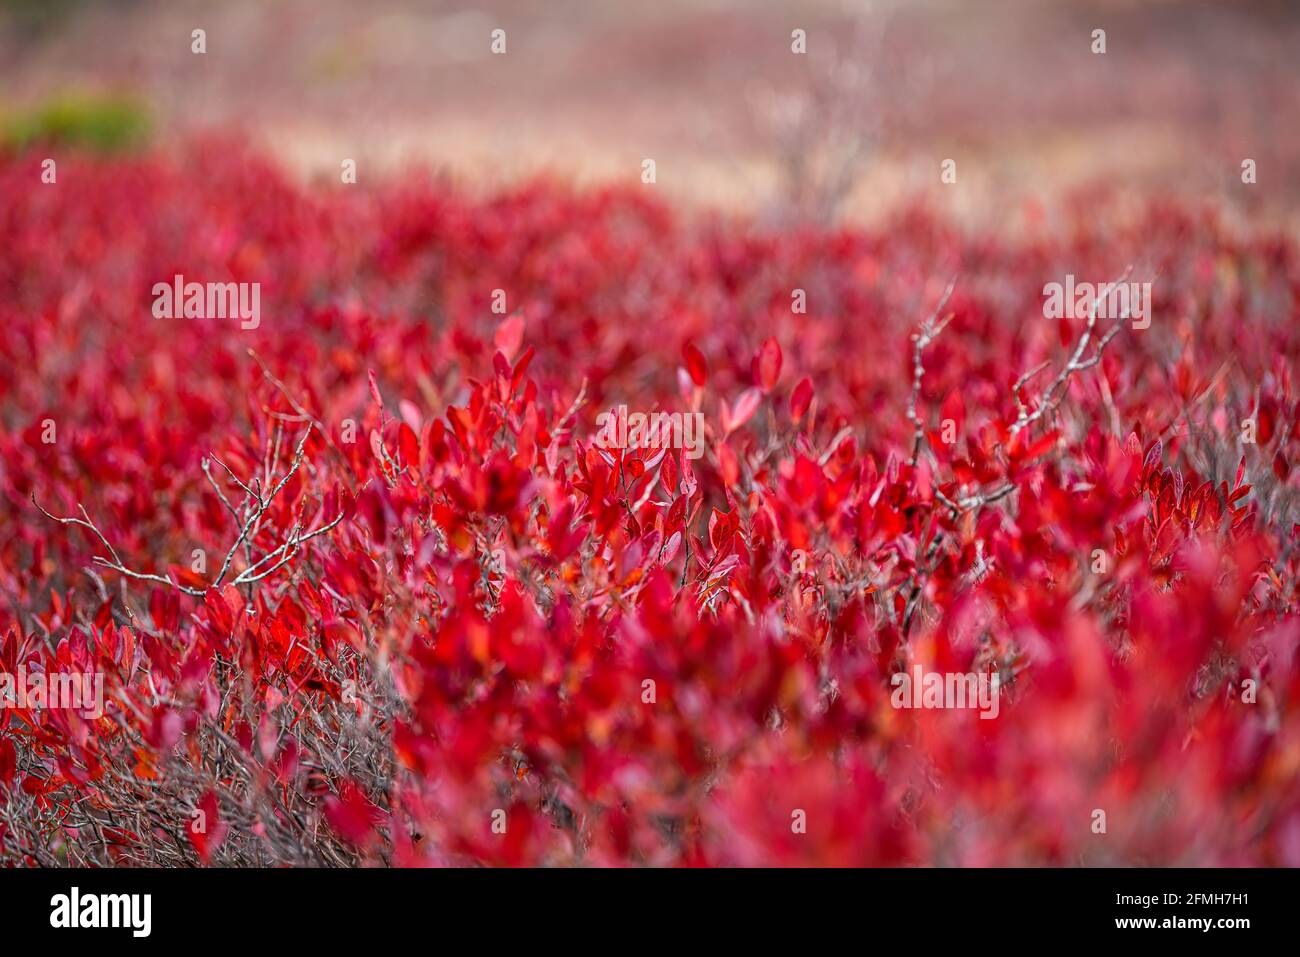 Macro gros plan de couleur rouge bleuet huckleberry buissons motif de feuilles en automne avec texture et arrière-plan bokeh dedans Virginie-Occidentale Banque D'Images